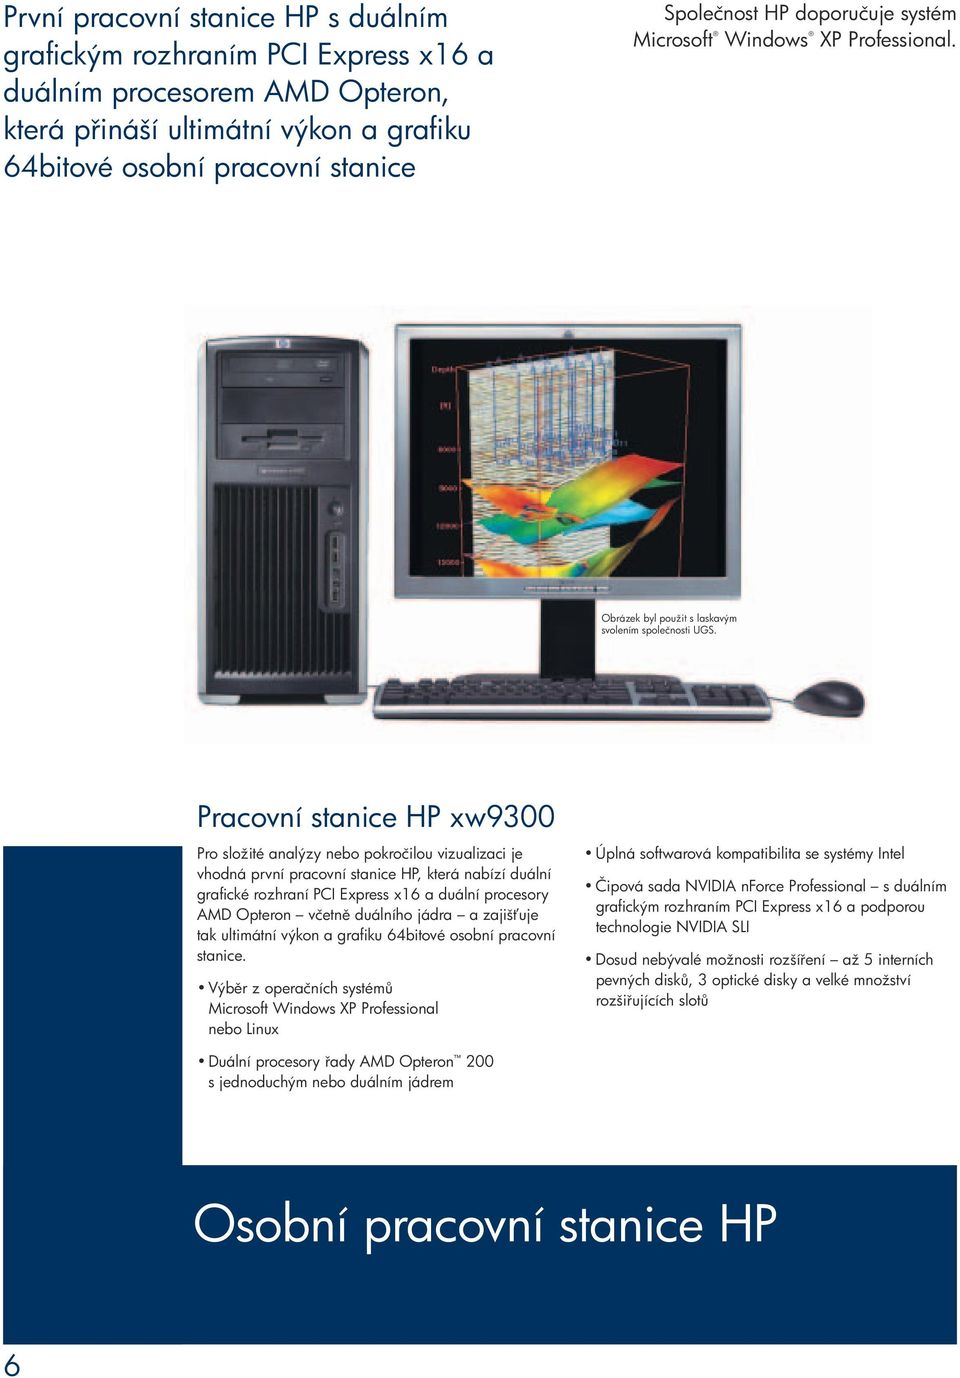 Pracovní stanice HP xw9300 Pro složité analýzy nebo pokročilou vizualizaci je vhodná první pracovní stanice HP, která nabízí duální grafické rozhraní PCI Express x16 a duální procesory AMD Opteron